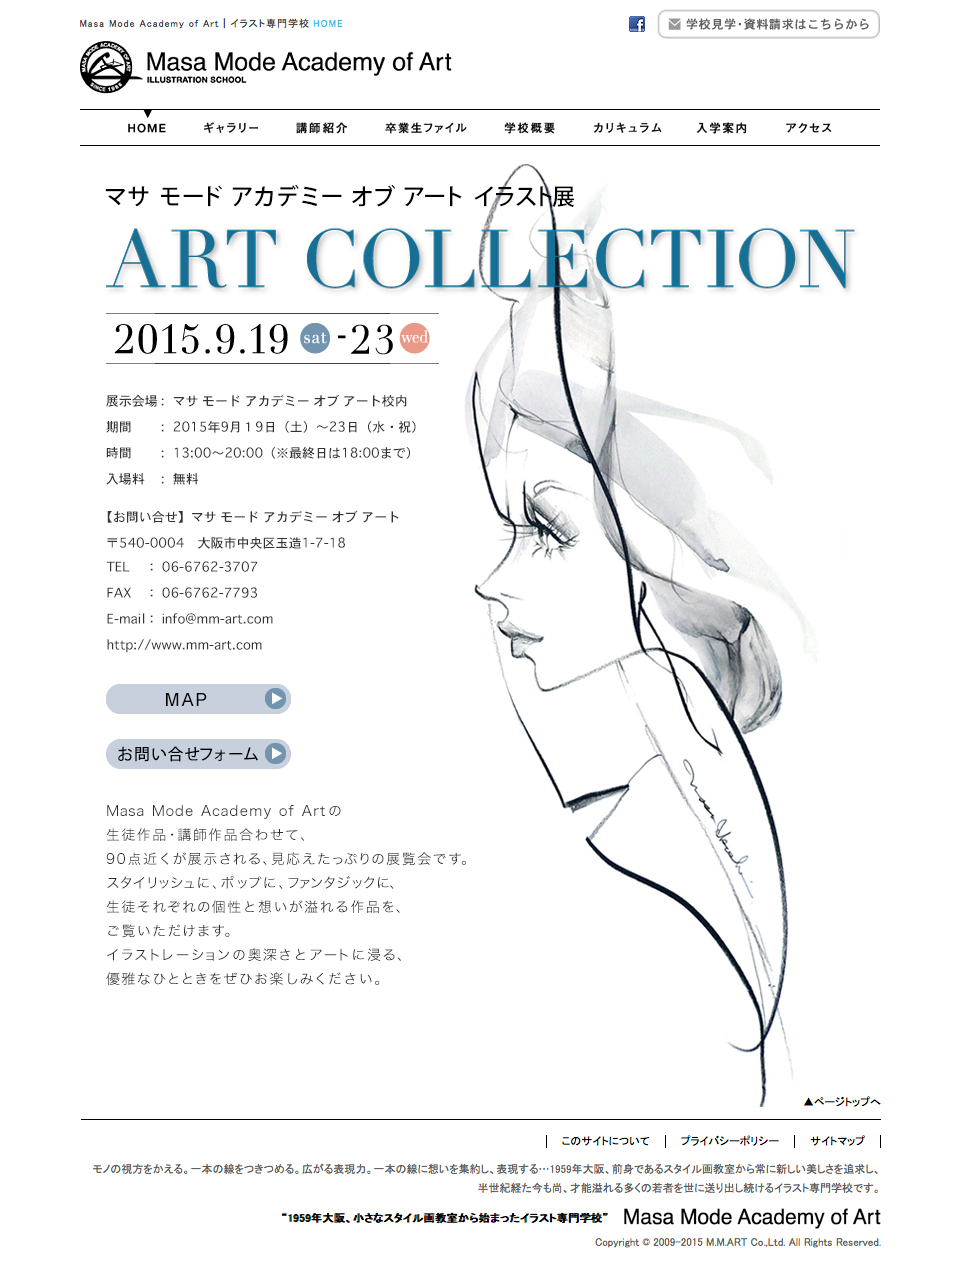 9 19 土 23日 水 祝 イラスト展 Art Collection が始まり